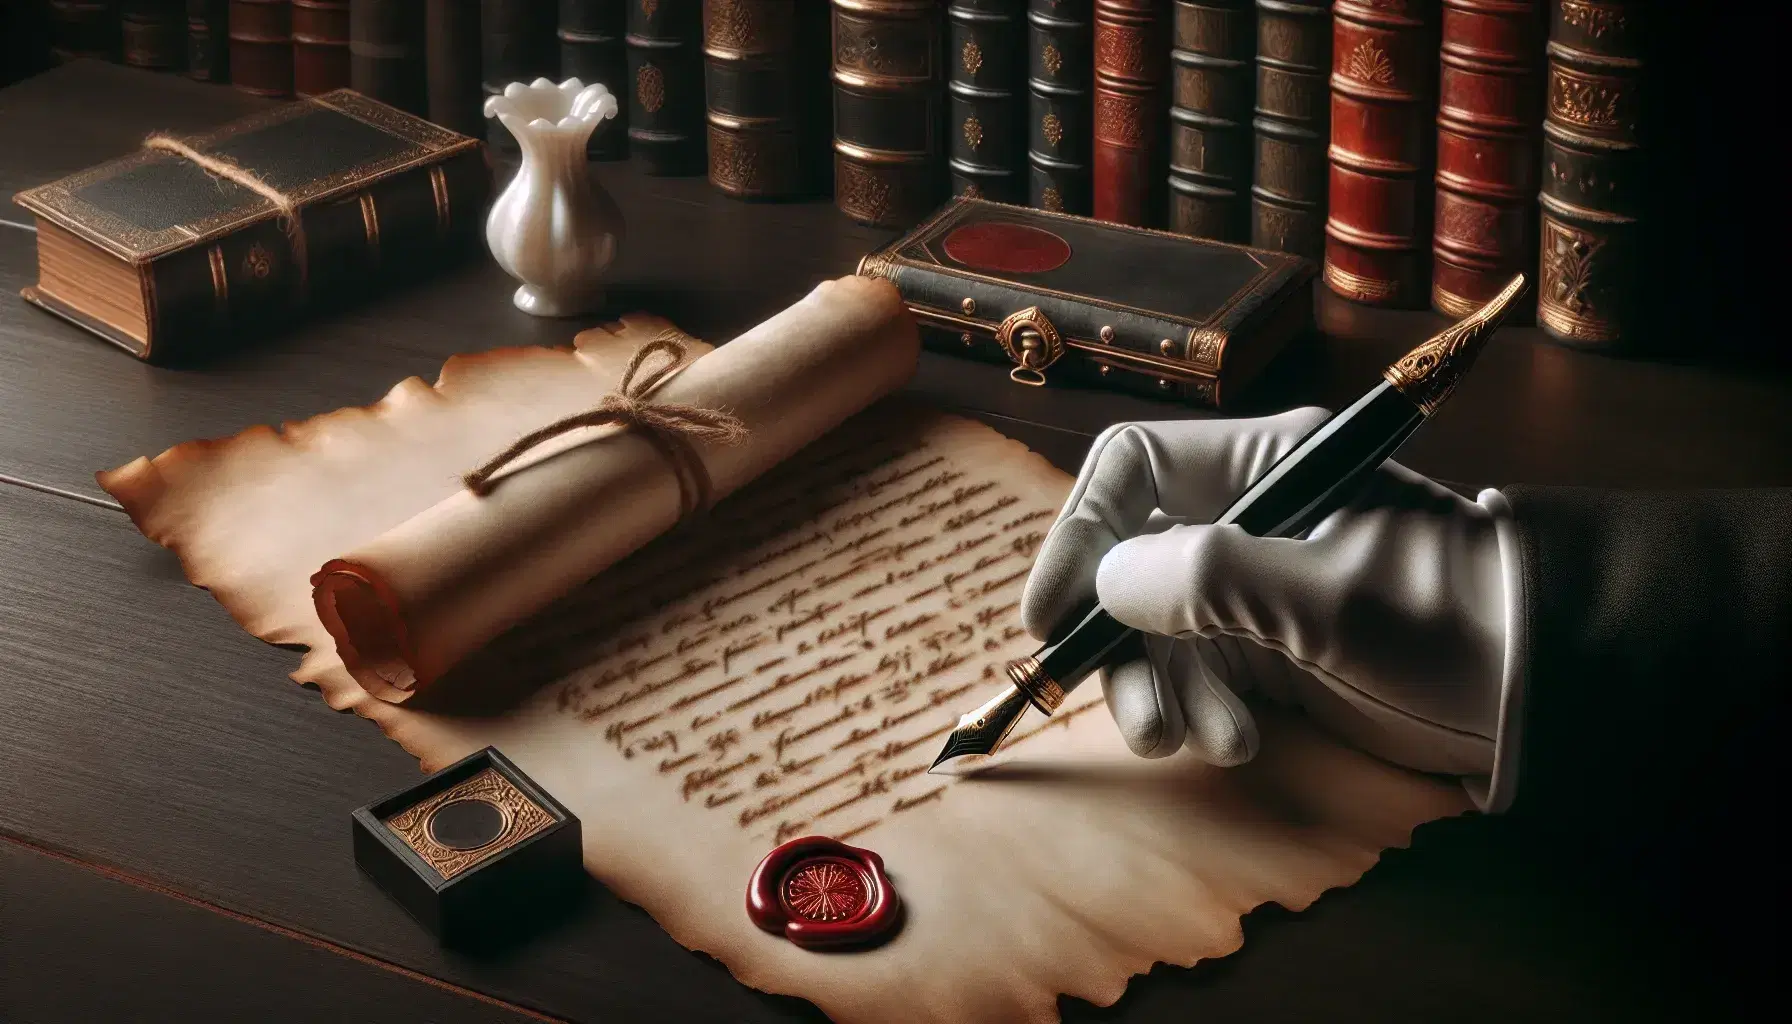 Mano con guante blanco sostiene pluma fuente negra con detalles dorados sobre pergamino antiguo, junto a sello de cera rojo y tintero de porcelana en mesa de madera oscura.